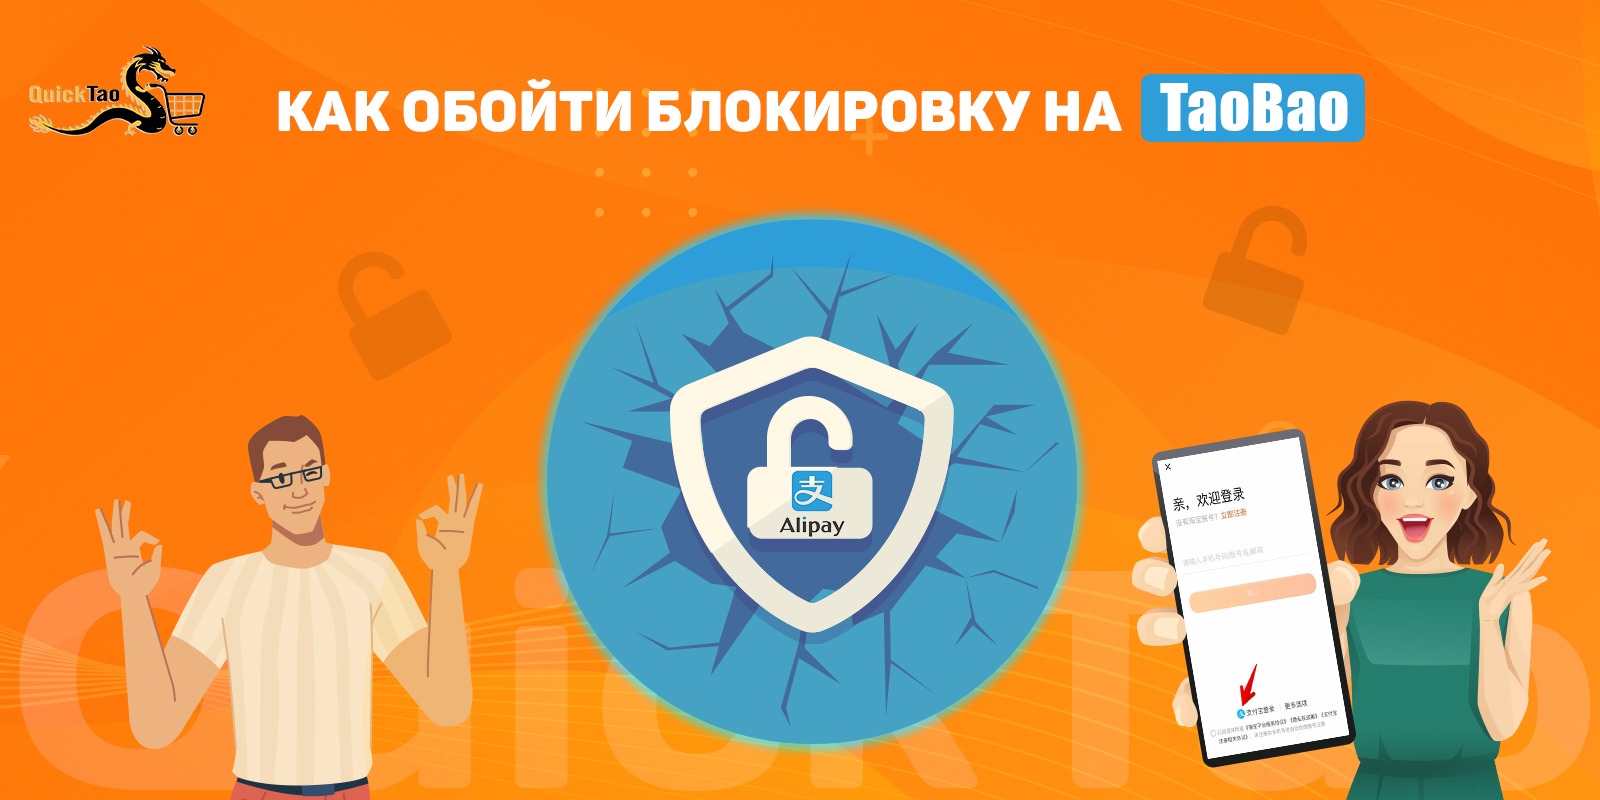 Как обойти блокировку телеграмма в казахстане на андроид фото 93